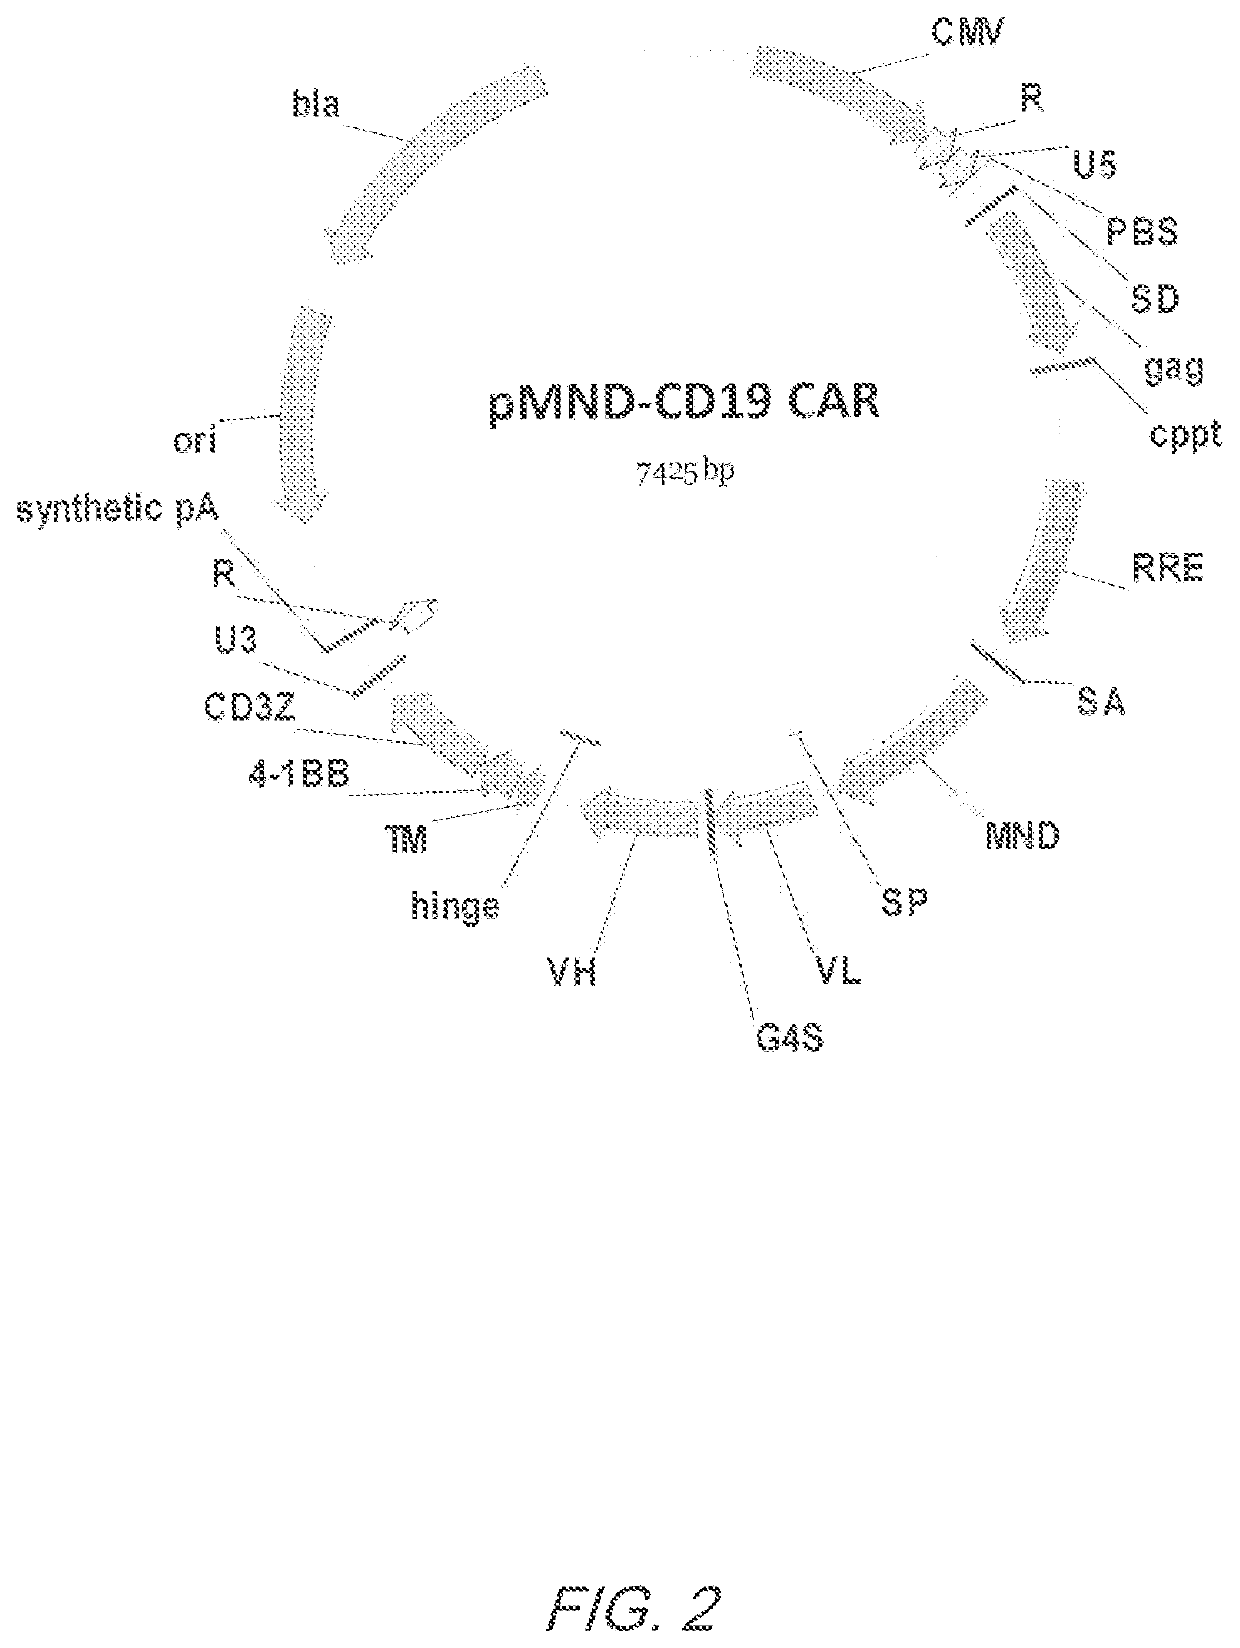 MND promoter chimeric antigen receptors